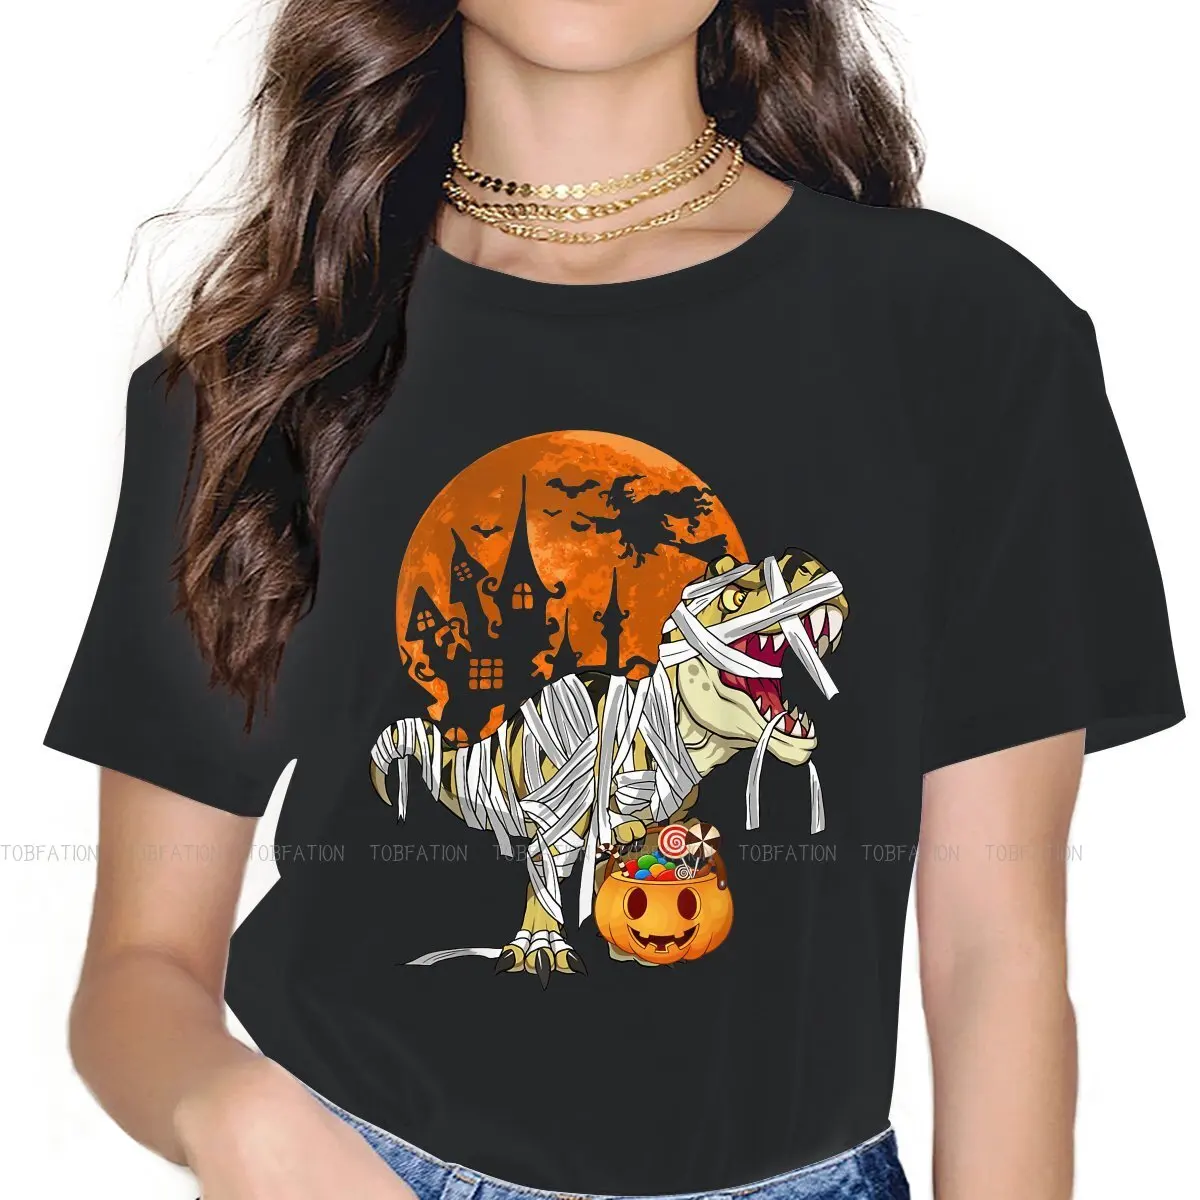 

Футболка женская хлопковая с рисунком, топ с рисунком мамы Рекса, тыквы, скелета, динозавра, для Хэллоуина, 4XL